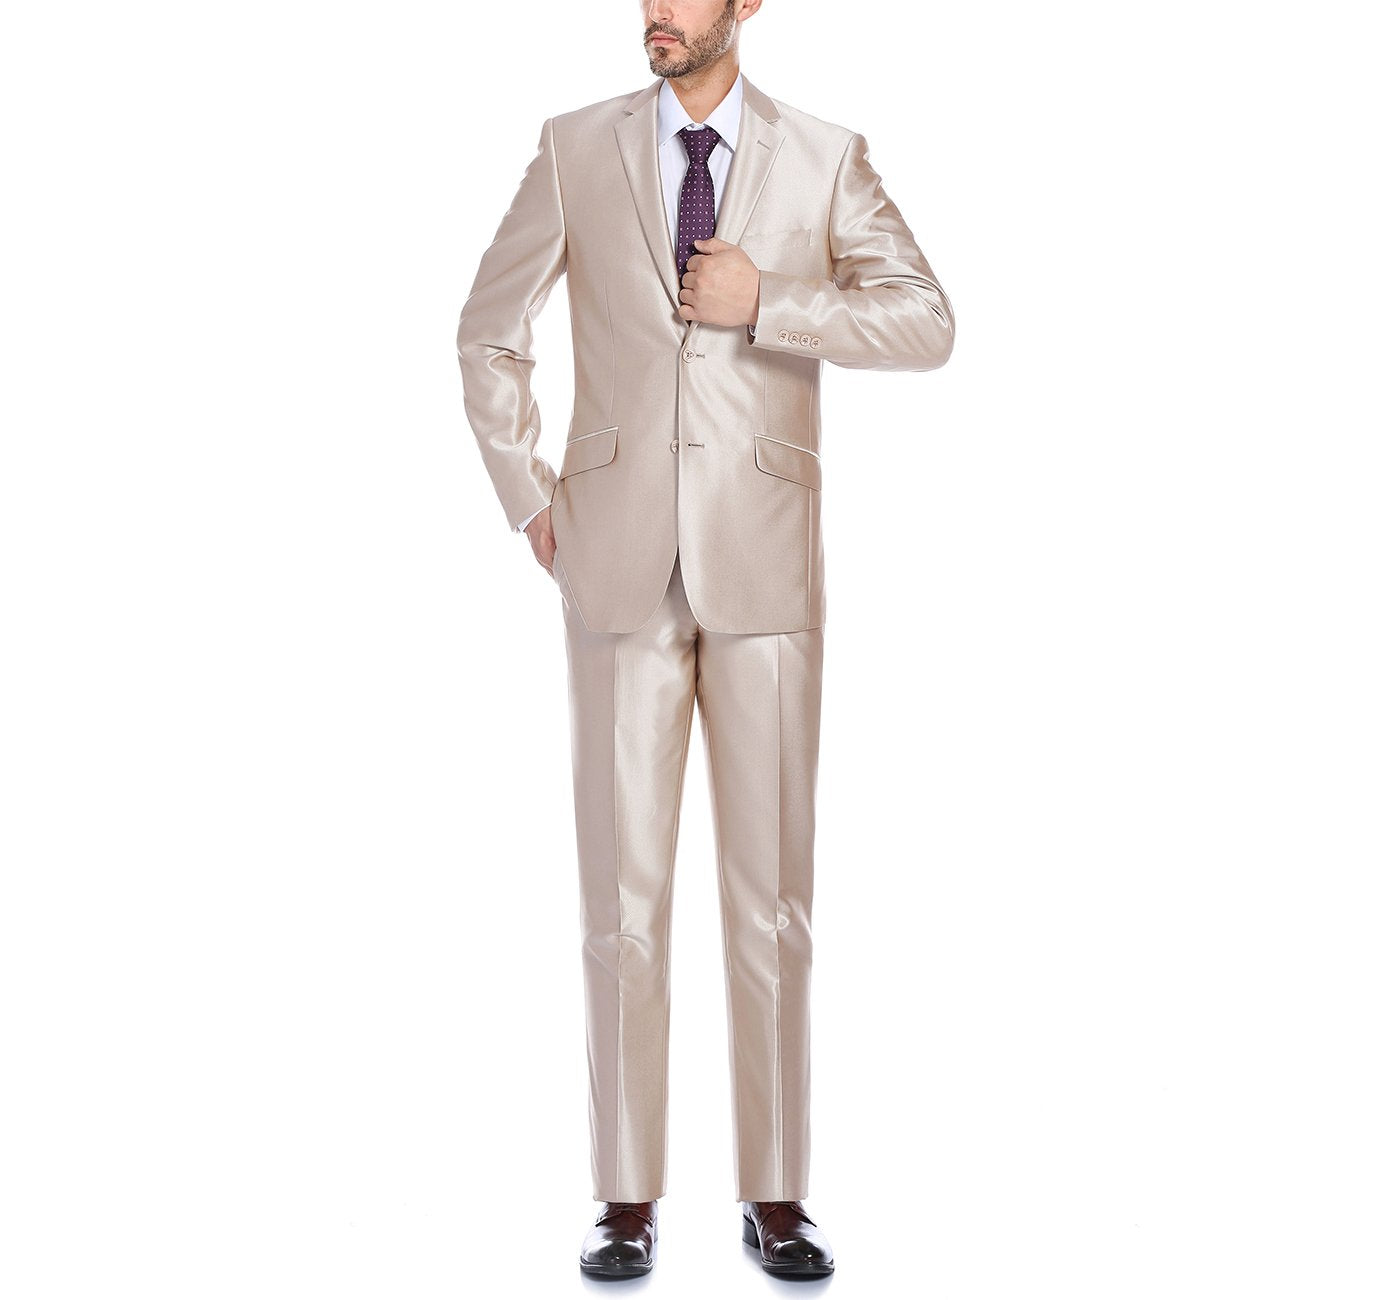 207-3 Men's Beige Sharkskin Italian Styled Two Piece Suit